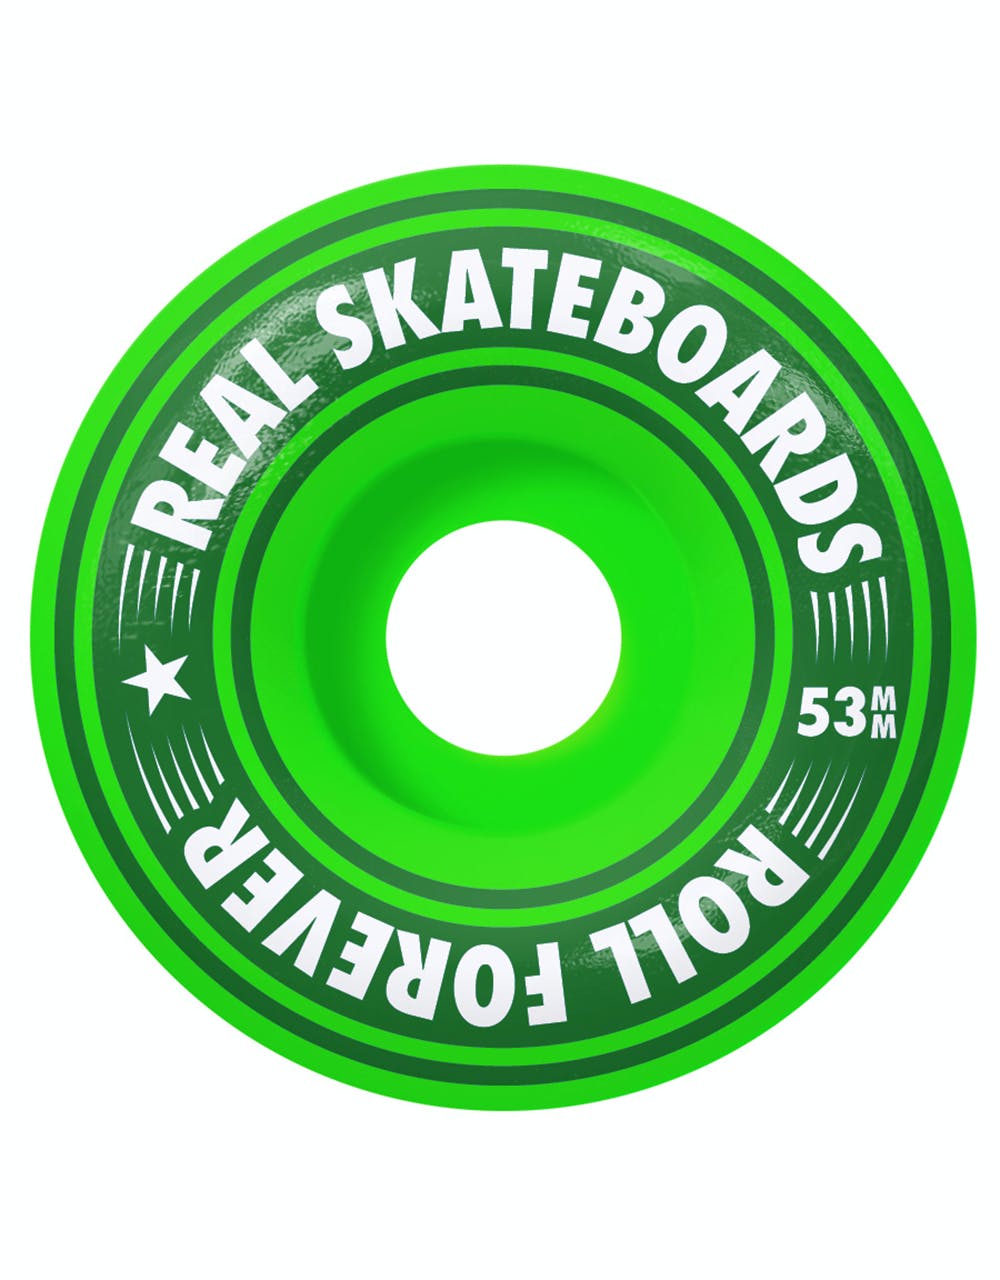 Real Oval Heatwave Complete Skateboard - 7.5"